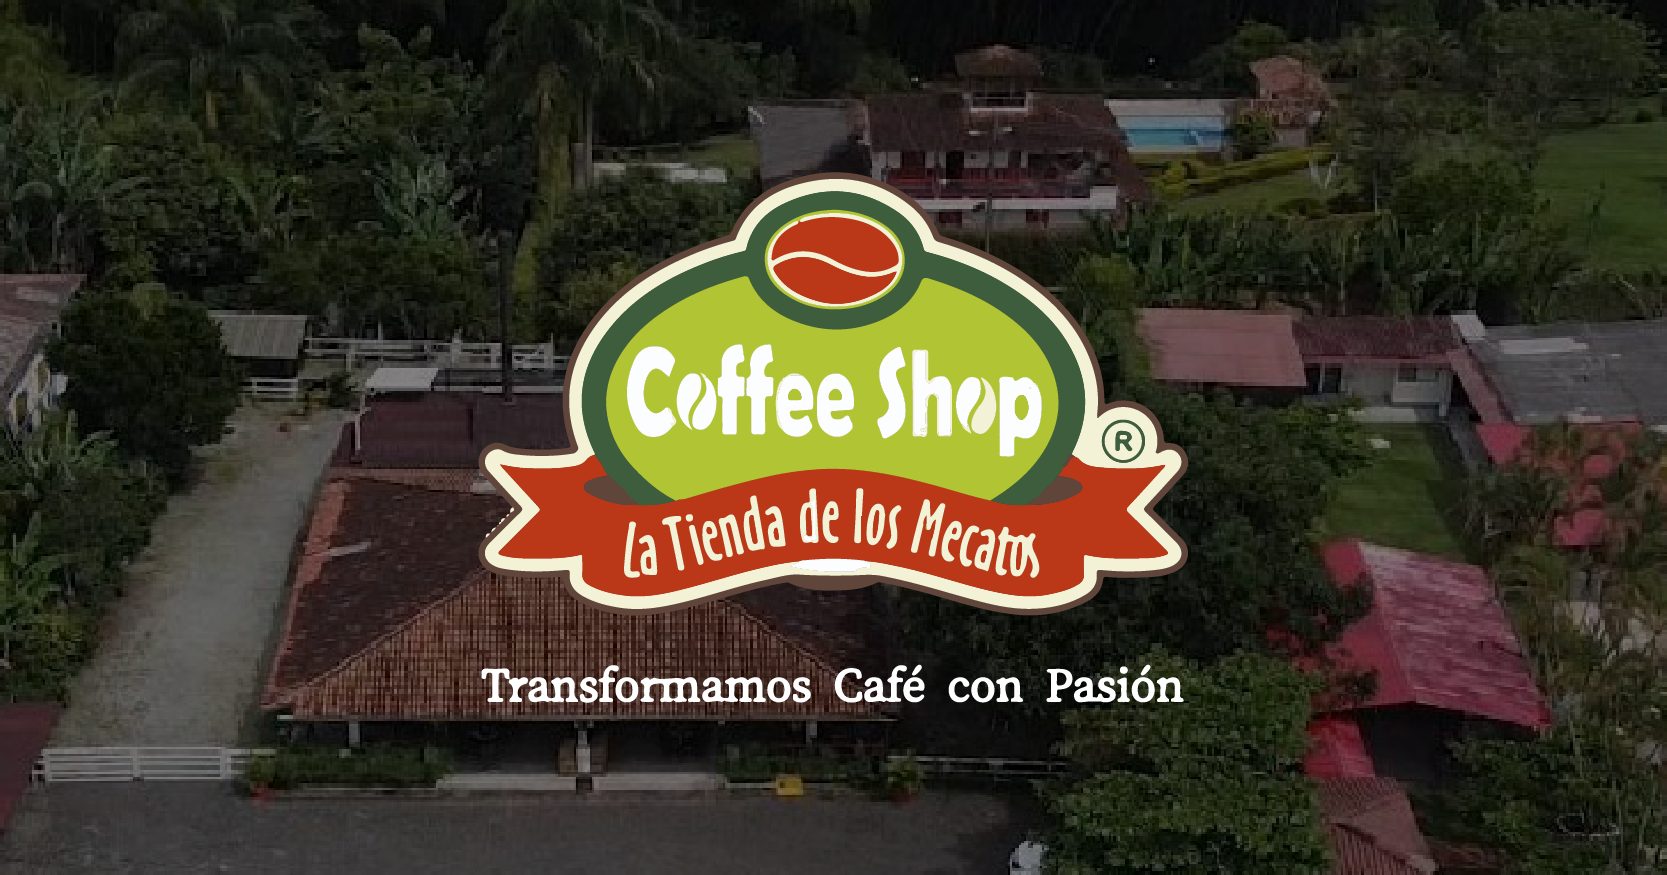 Coffee Shop La Tienda de los Mecatos